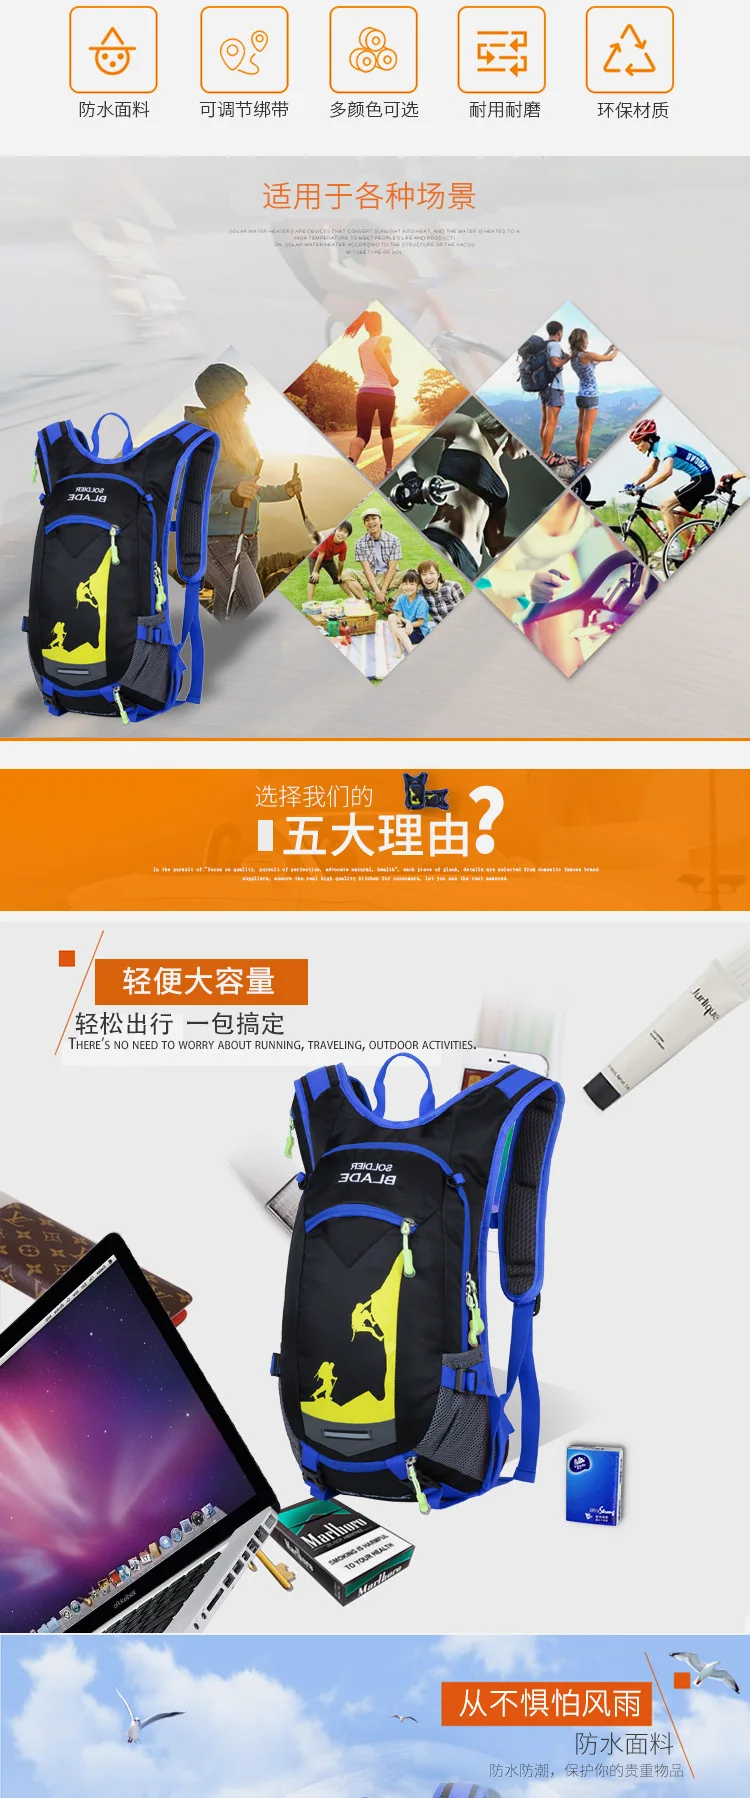 18L водонепроницаемый рюкзак для велосипеда, для спорта на открытом воздухе, сумка для воды, сумки для мужчин и женщин, рюкзак для велоспорта, пешего туризма, кемпинга, бега